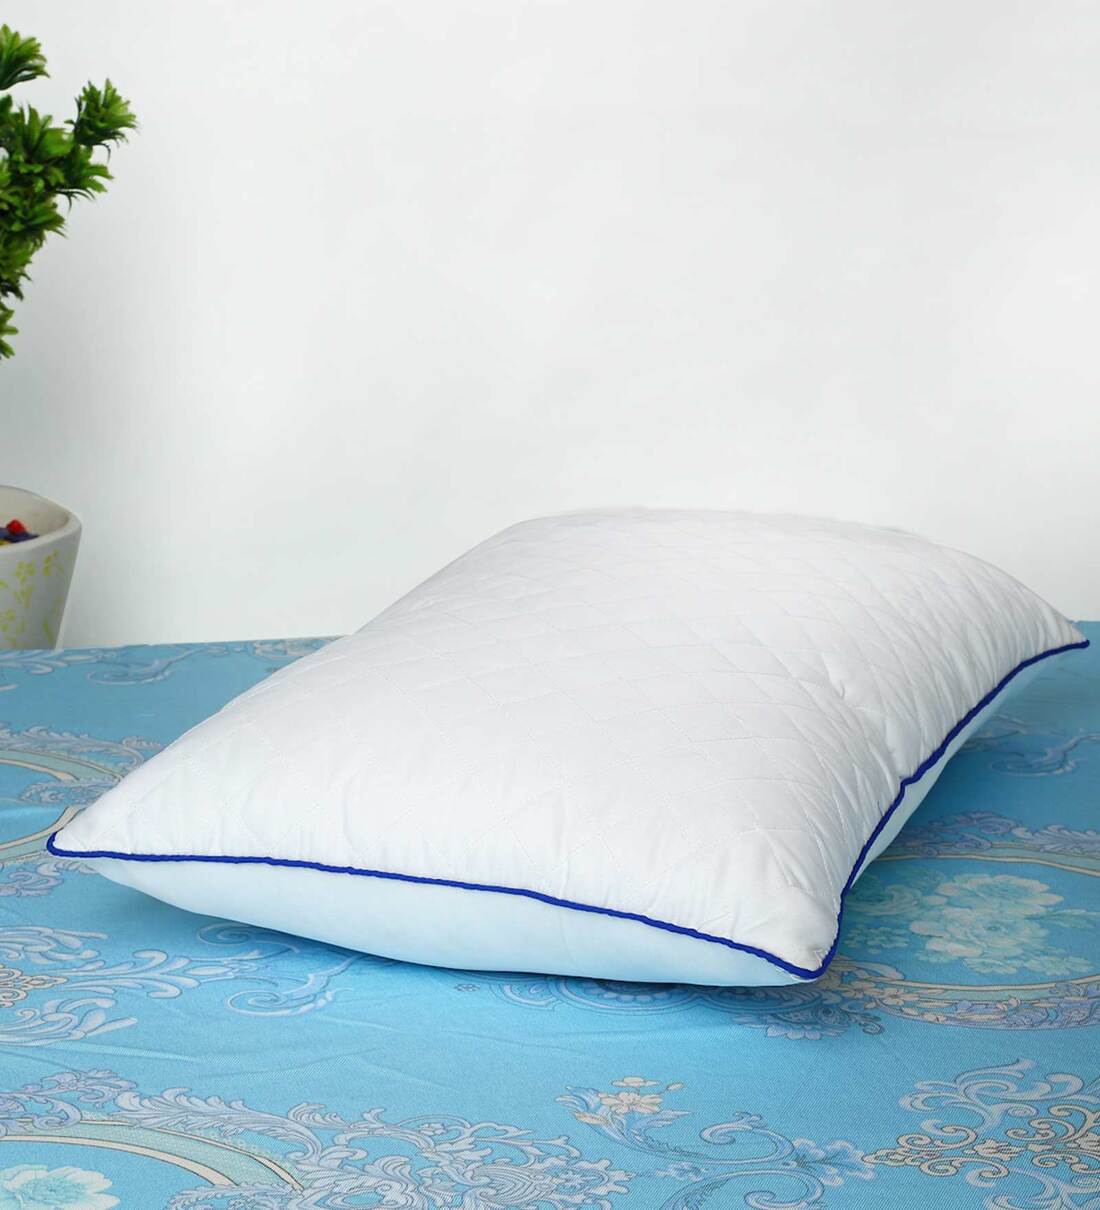 Sleeping Pillow Market Share,